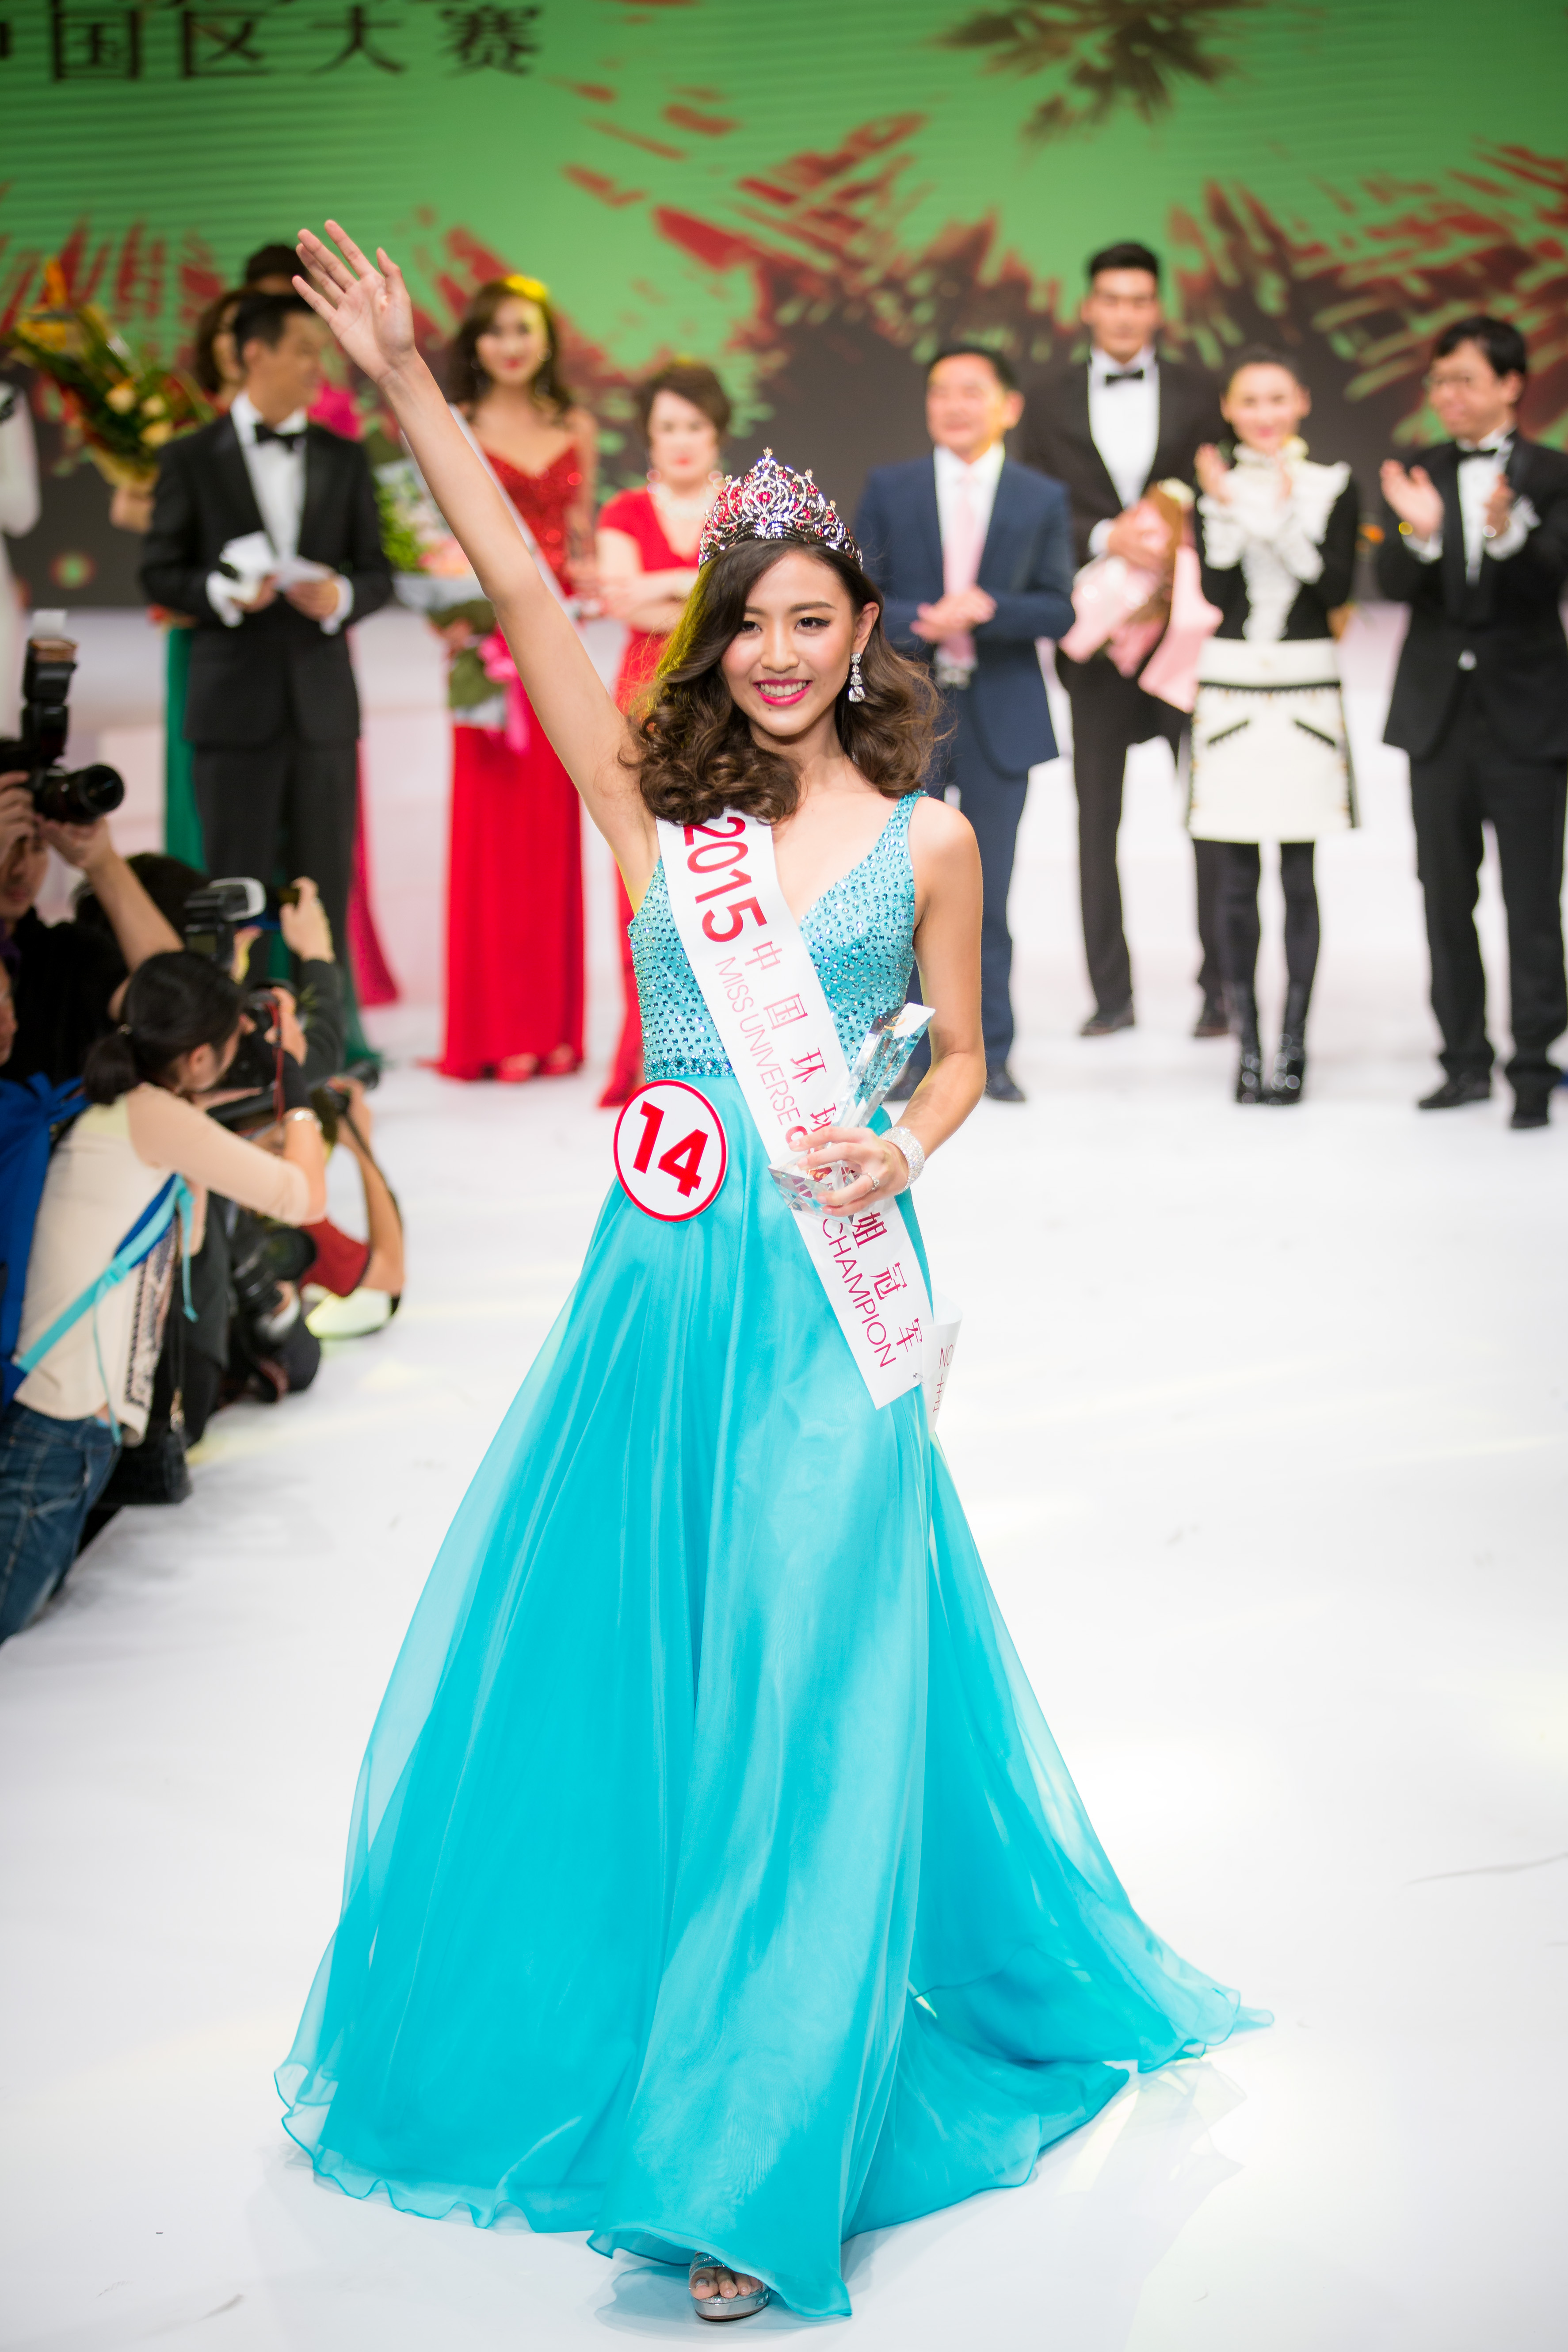 魅力2017，亚洲小姐上海赛区总决赛圆满成功！